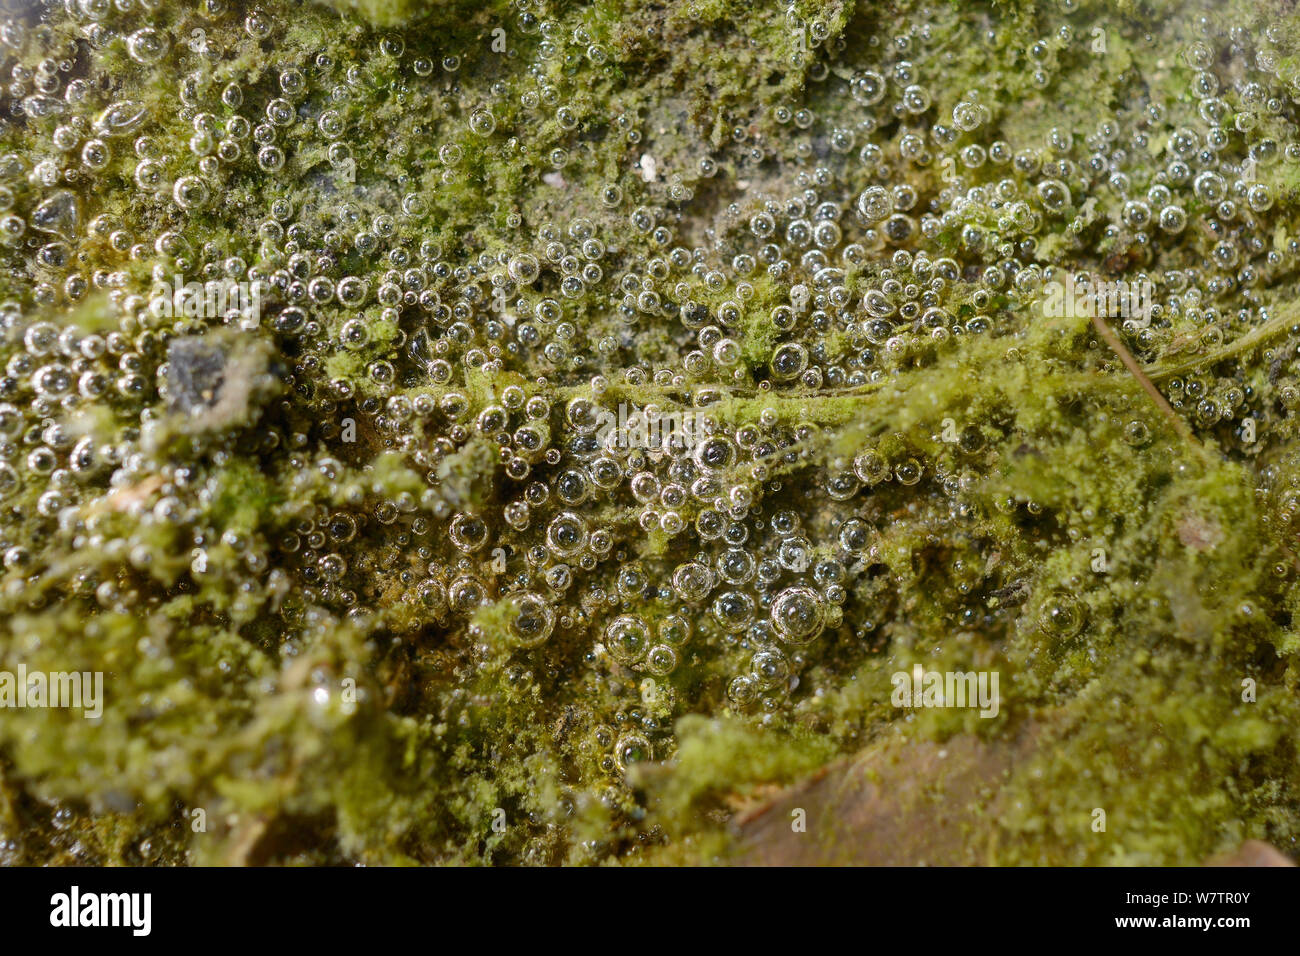 Mat d'algues d'eau douce verte blooming sur un draincover humide, libérant de l'oxygène par la photosynthèse des bulles, Wiltshire, Royaume-Uni, mai. Banque D'Images